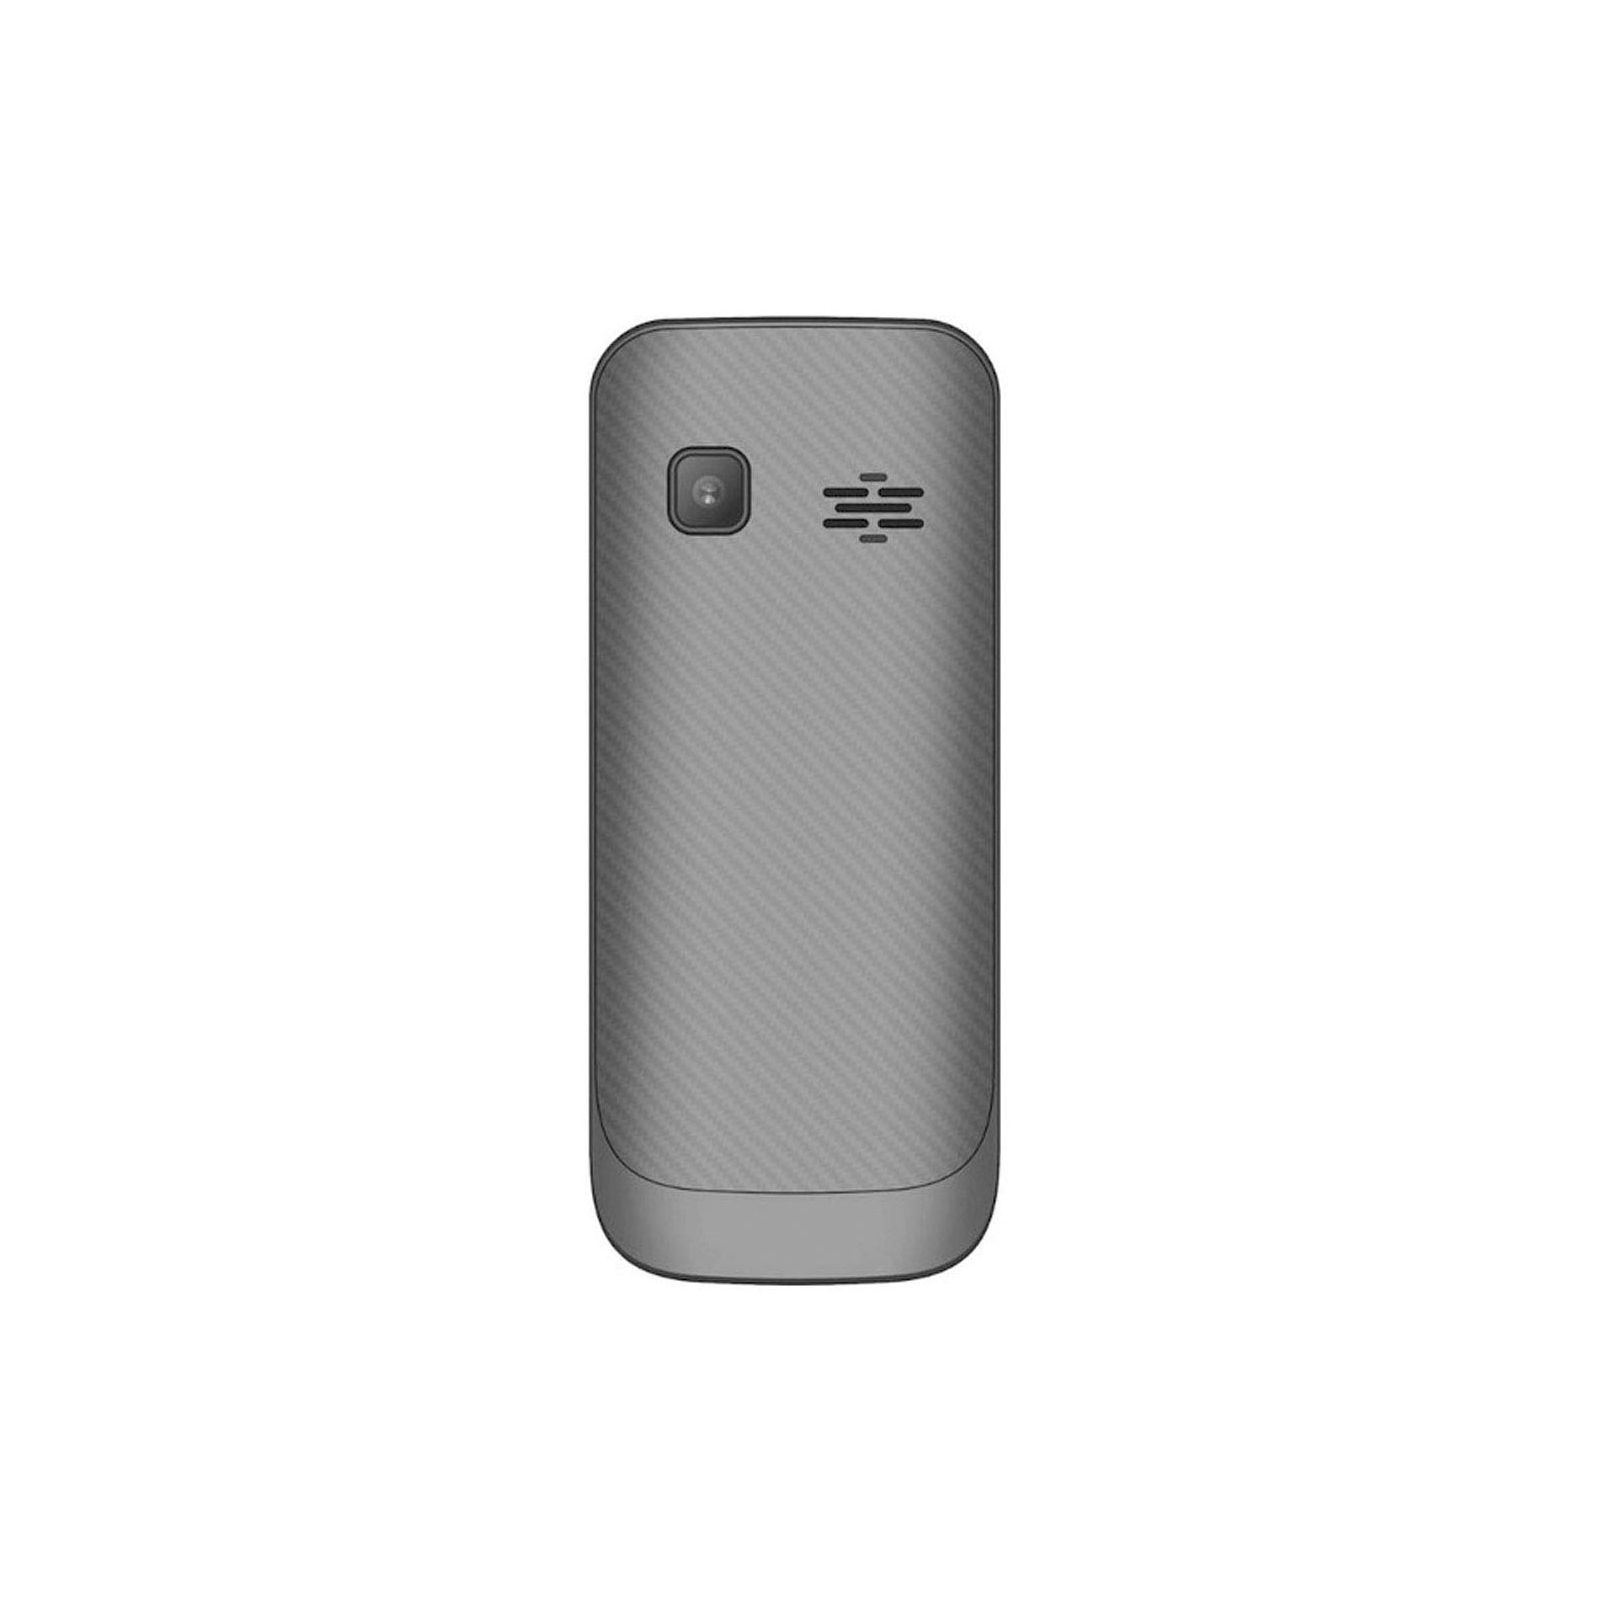 Мобильный телефон Maxcom MM142 Gray изображение 2